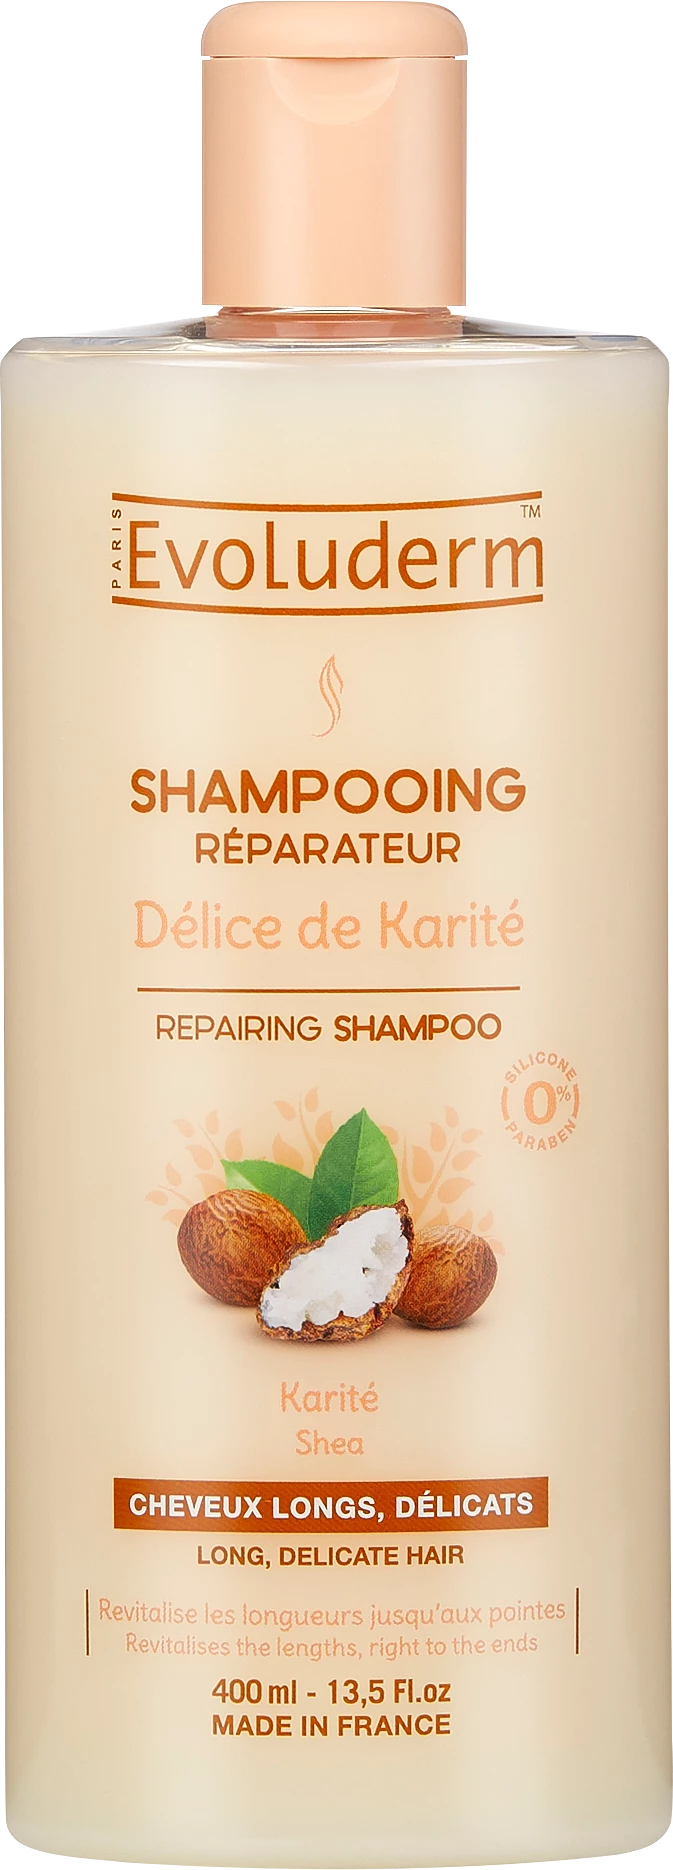 Shampooing Délice Karité, 400ml - EVOLUDERM